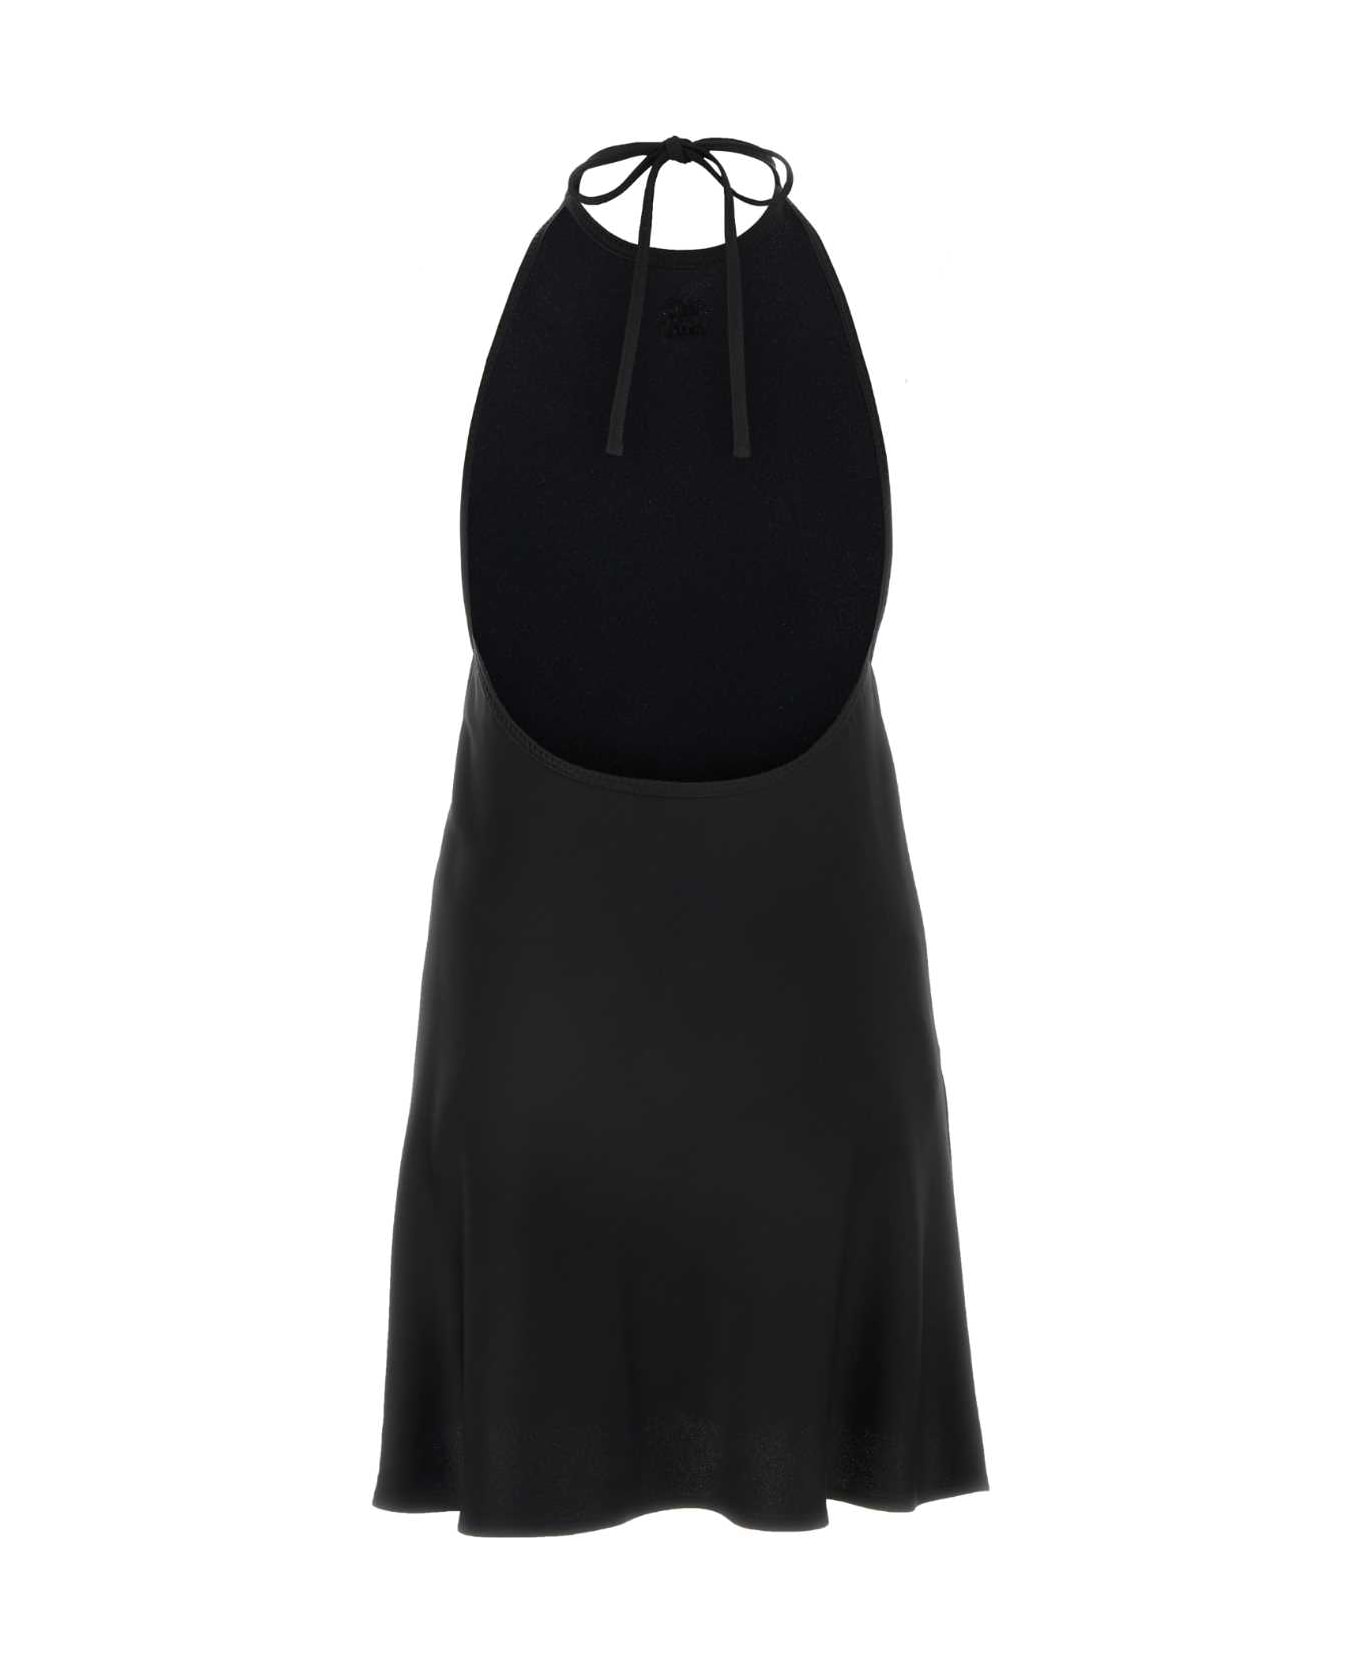 Miu Miu Black Satin Dress - NERO